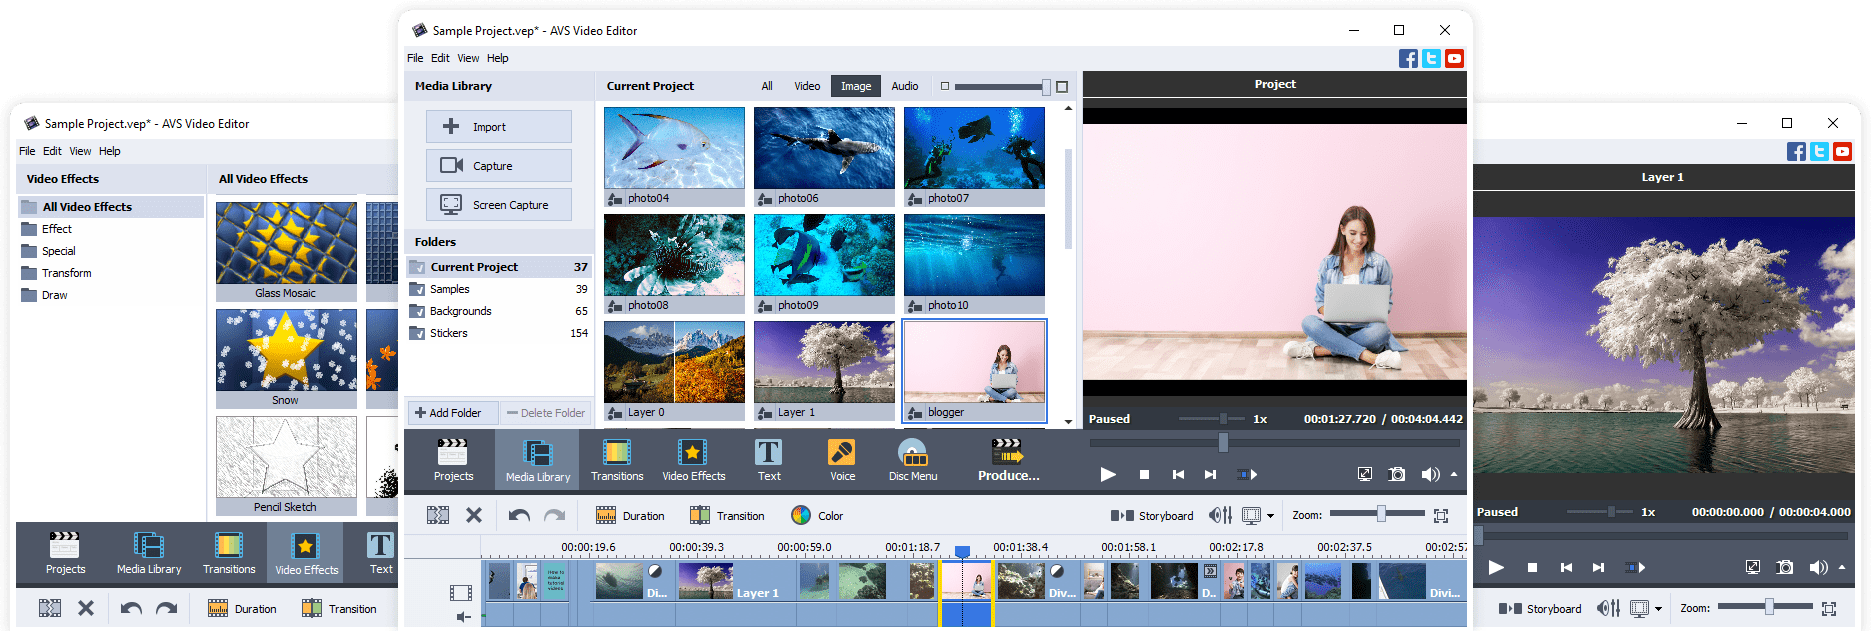 4K videos in AVS Video Editor